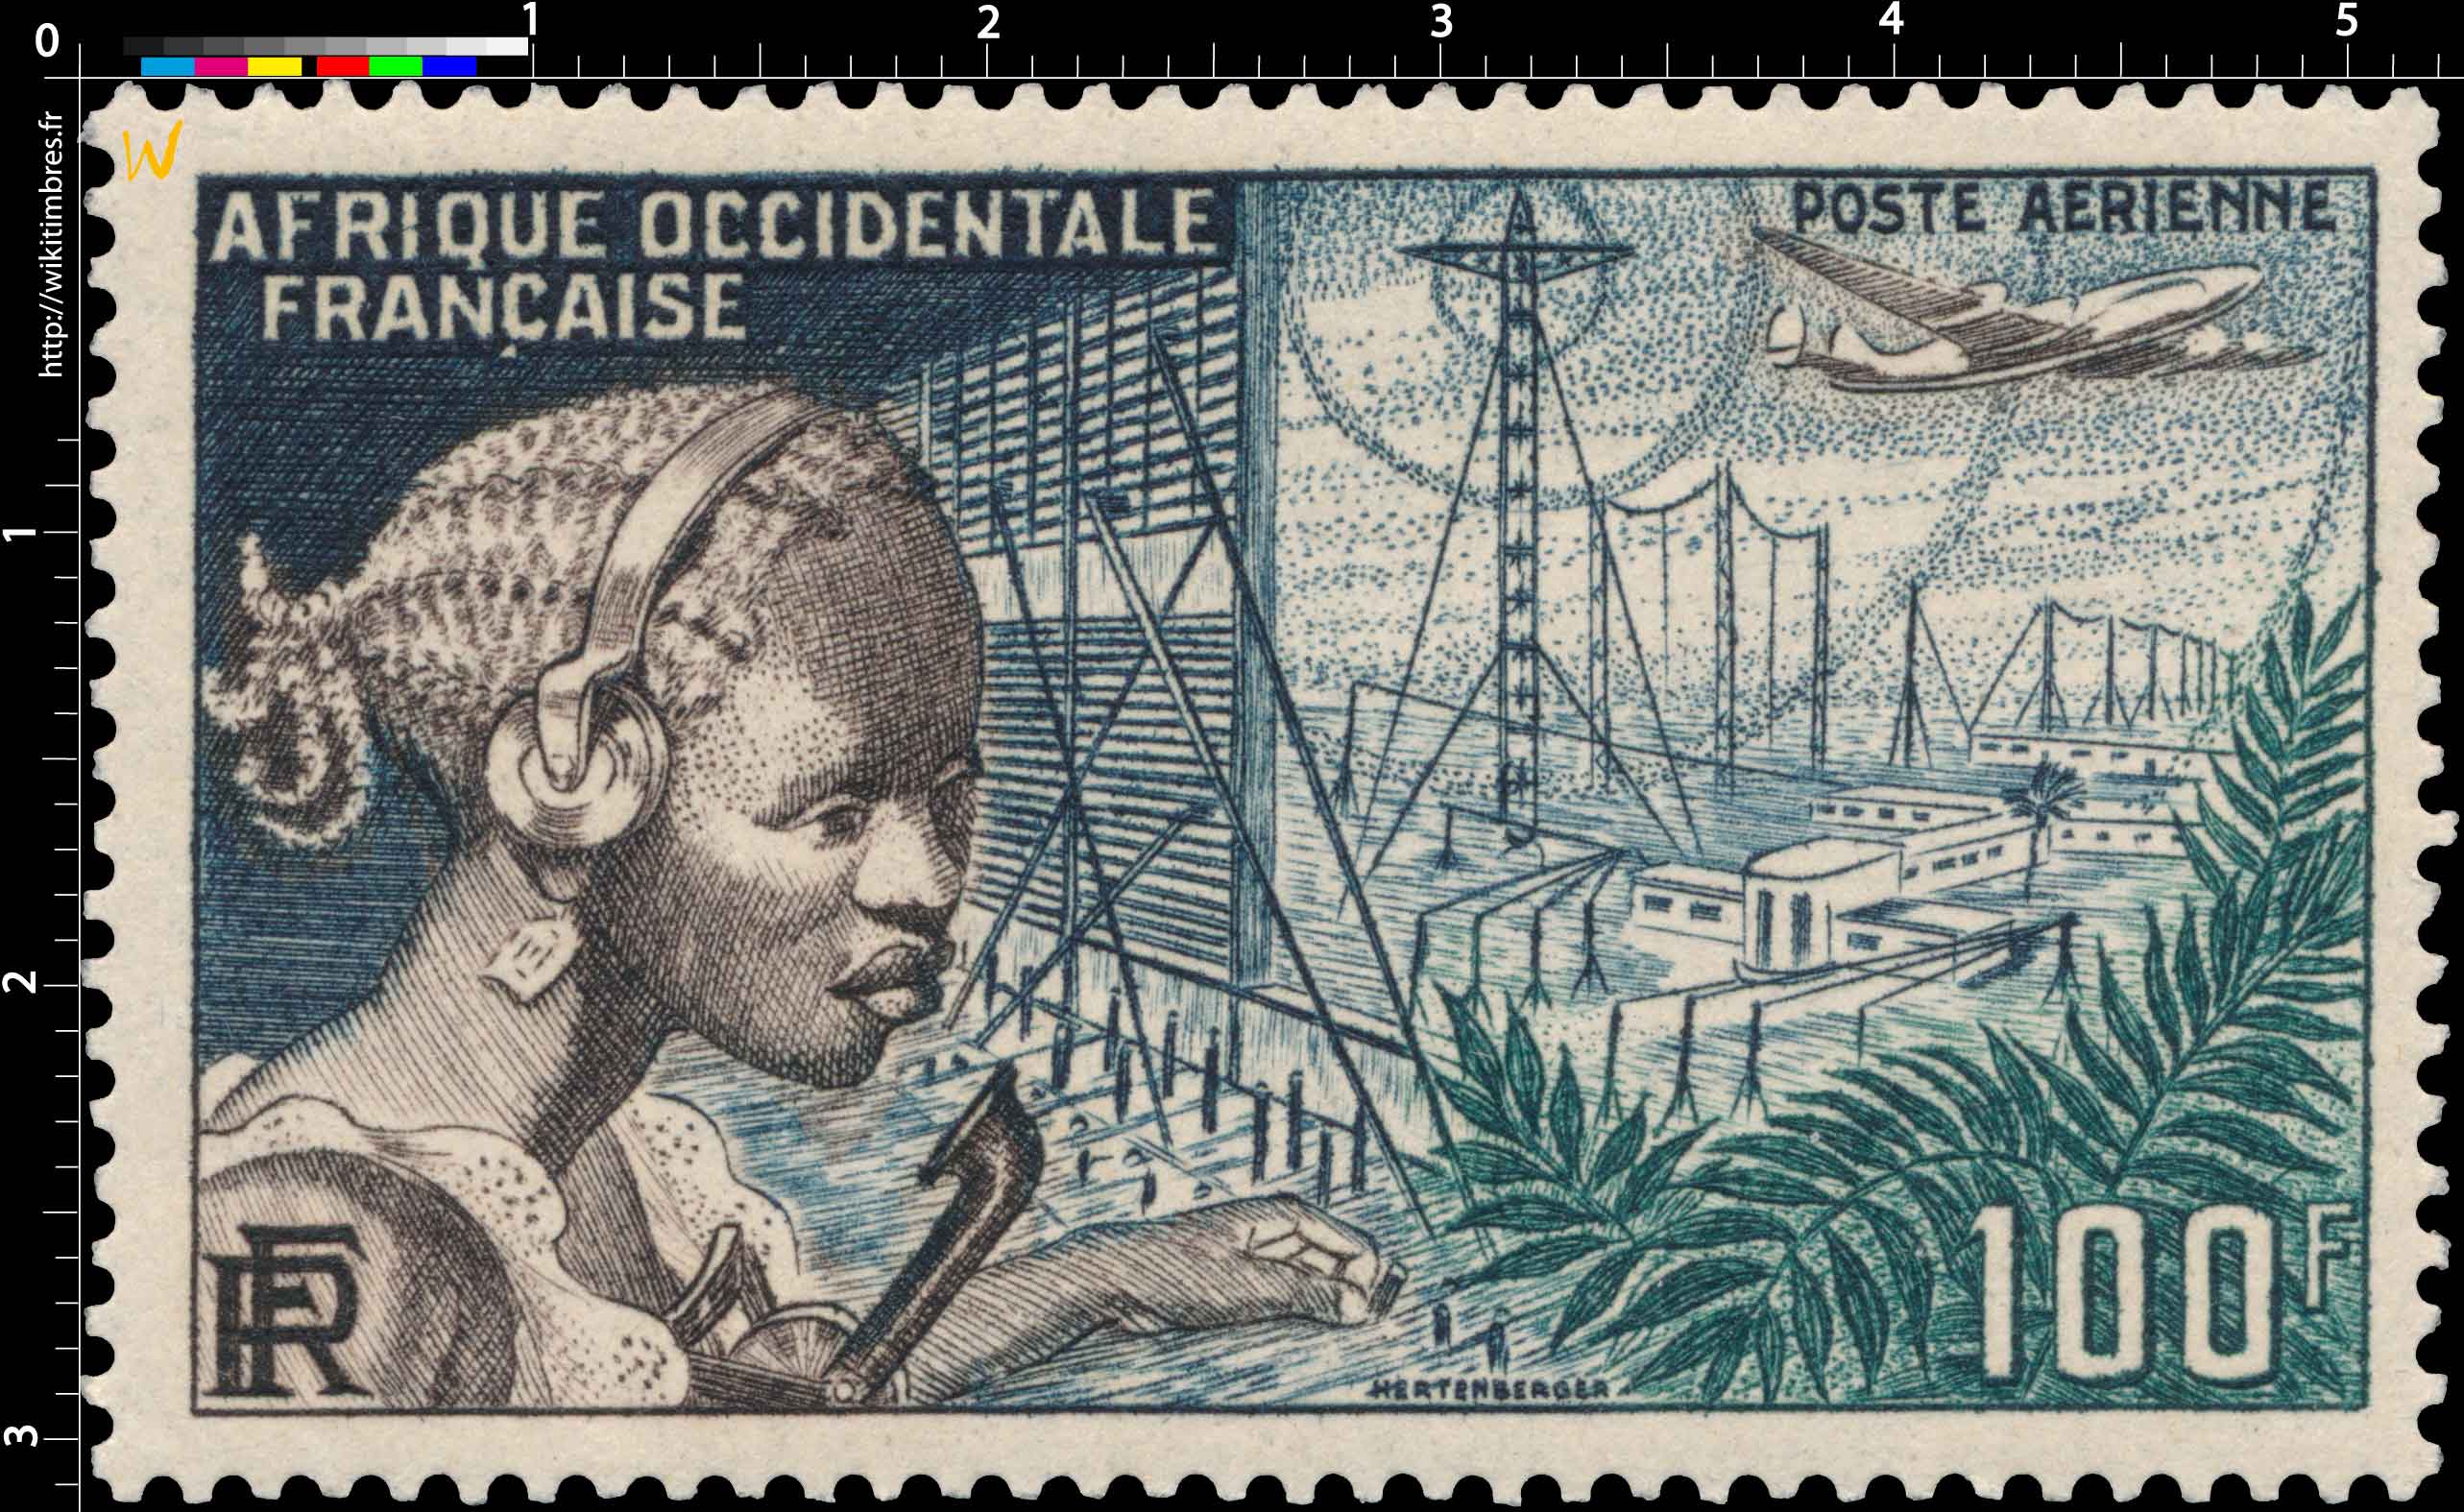 Afrique Occidentale Française 